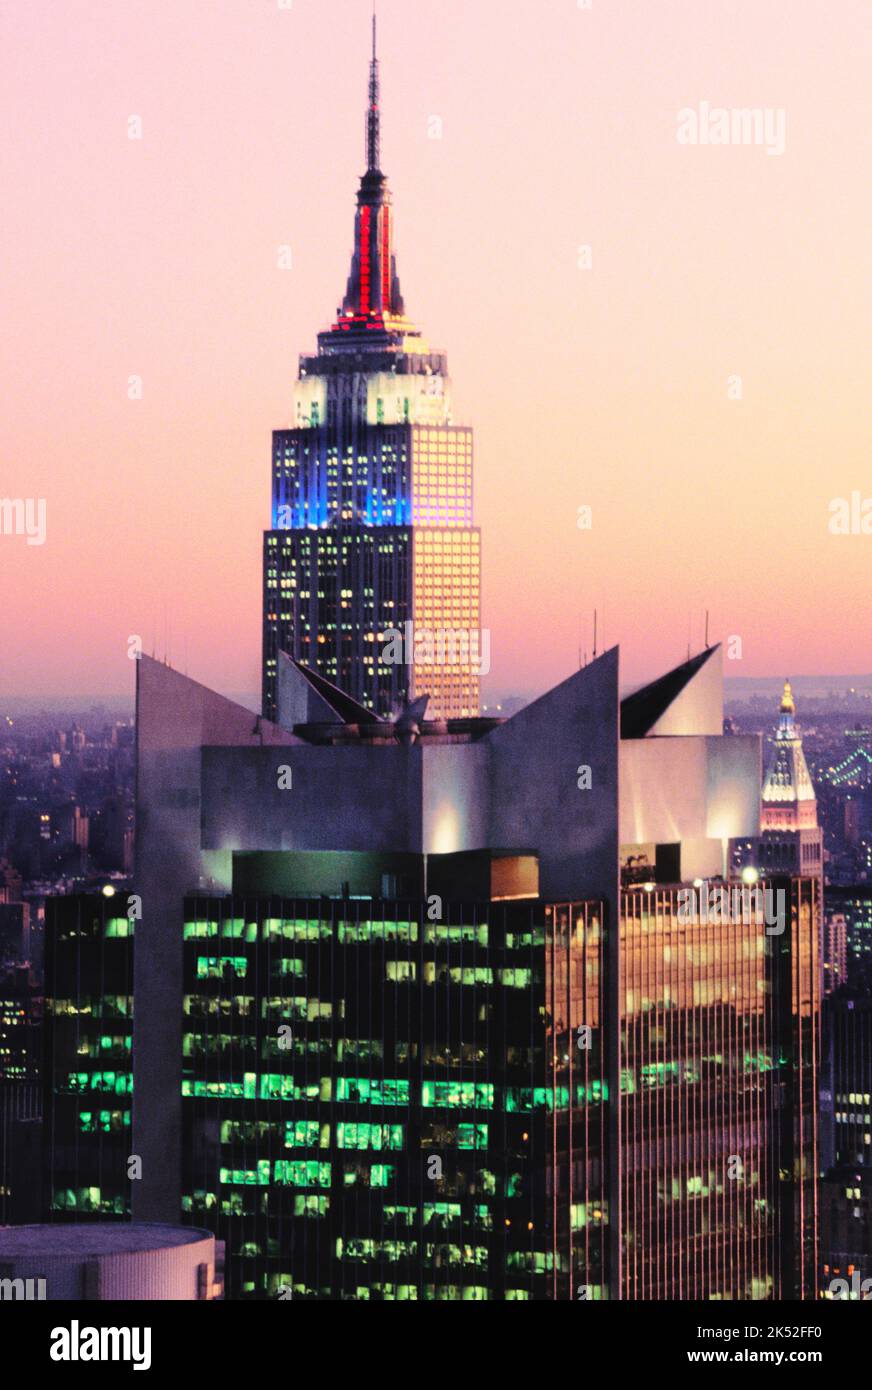 Empire State Building, gratte-ciel de New York à Midtown Manhattan. Immeuble de bureaux avec feux rouges blancs et bleus allumés au crépuscule. ÉTATS-UNIS. Architecture art déco. Banque D'Images